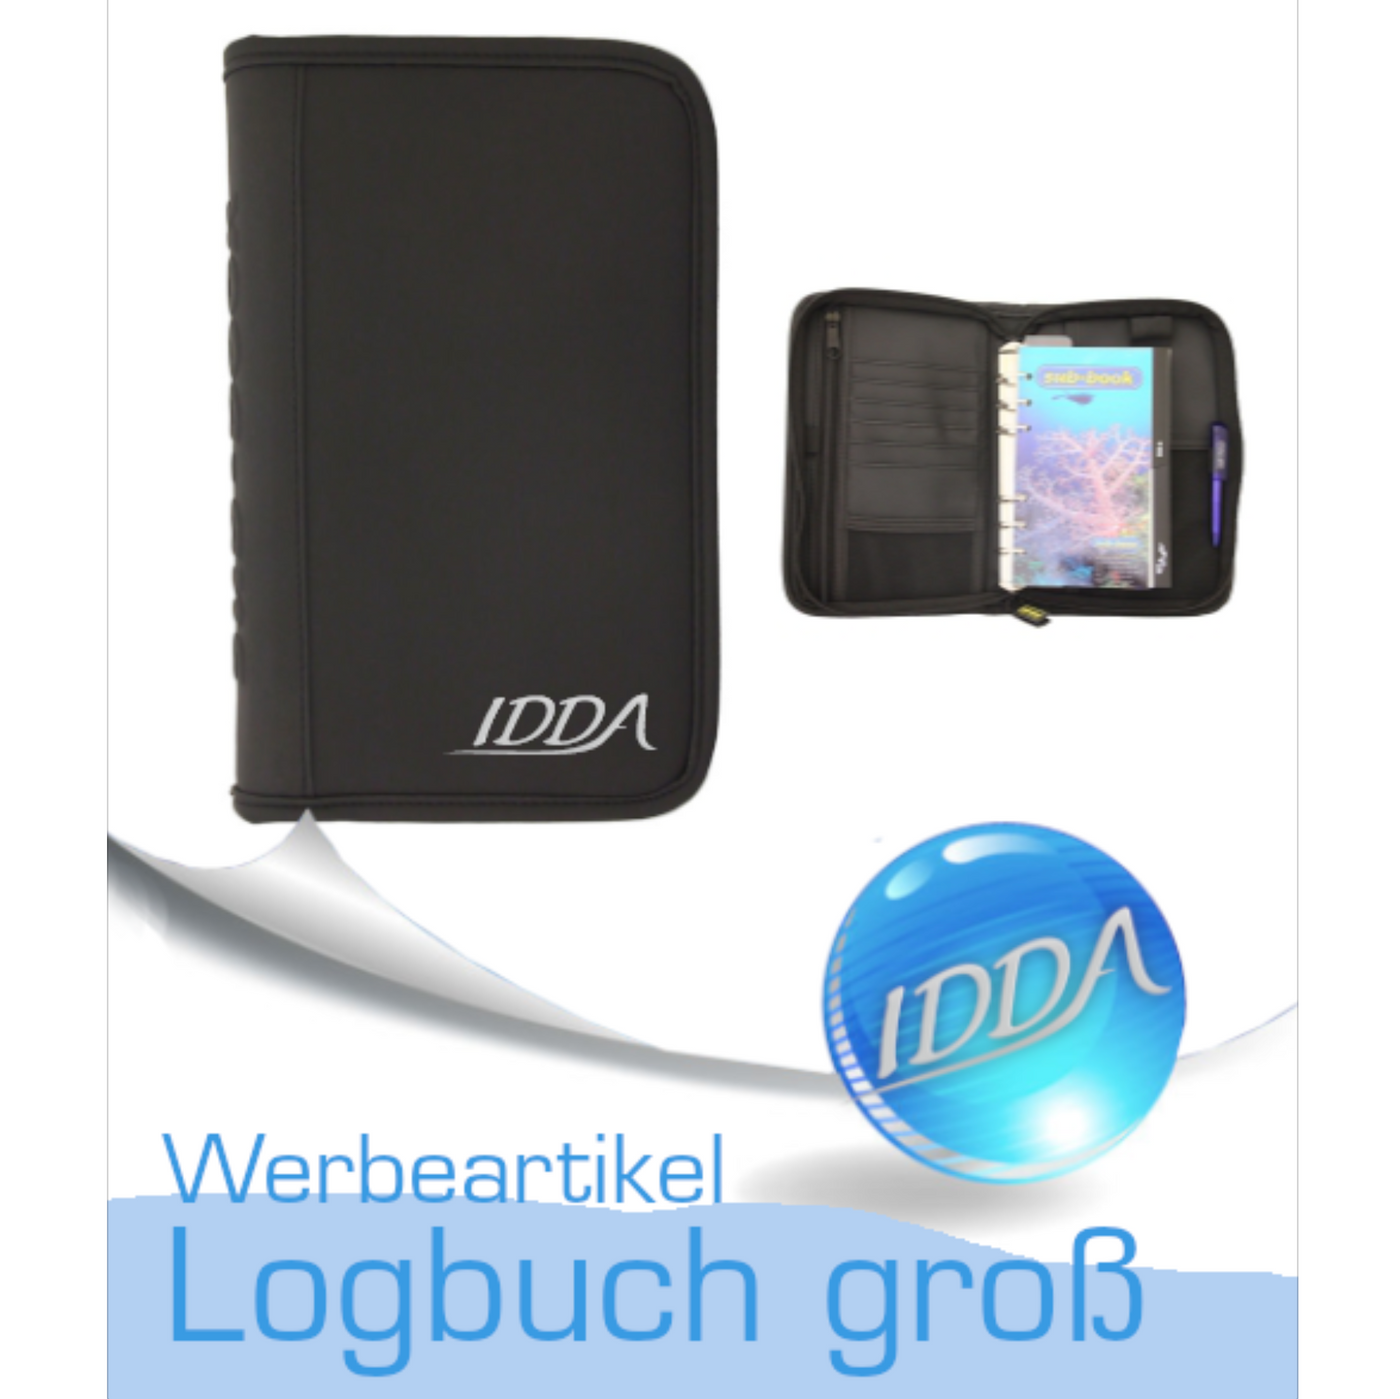 IDDA Logbuch (Groß)